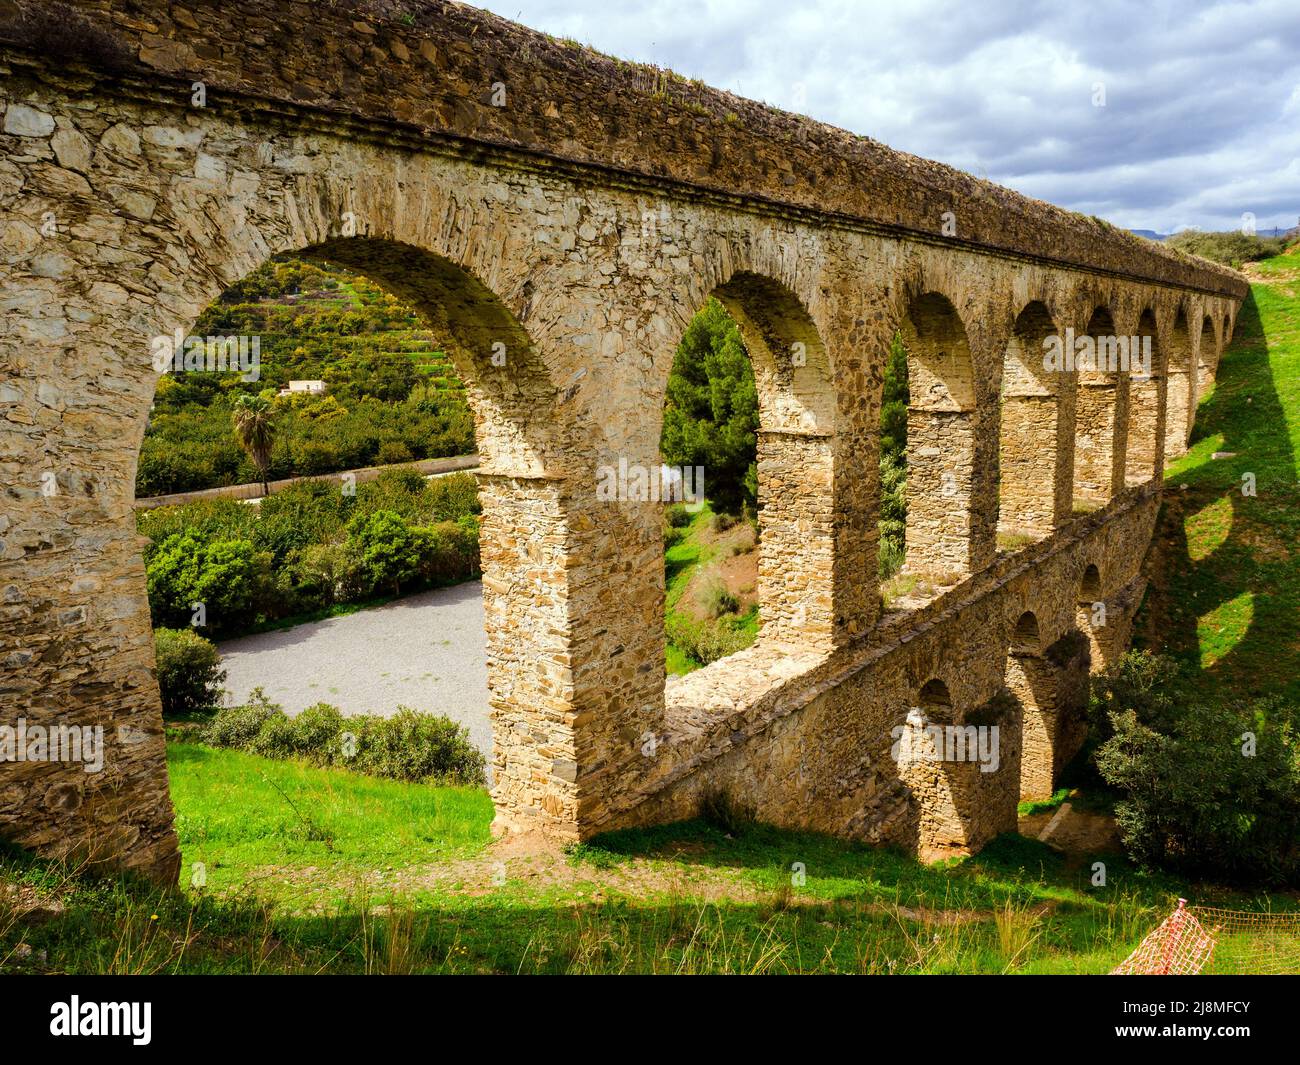 Acquedotto romano costruito nel 1st d.C. vicino ad Almunecar - Granada, Spagna Foto Stock